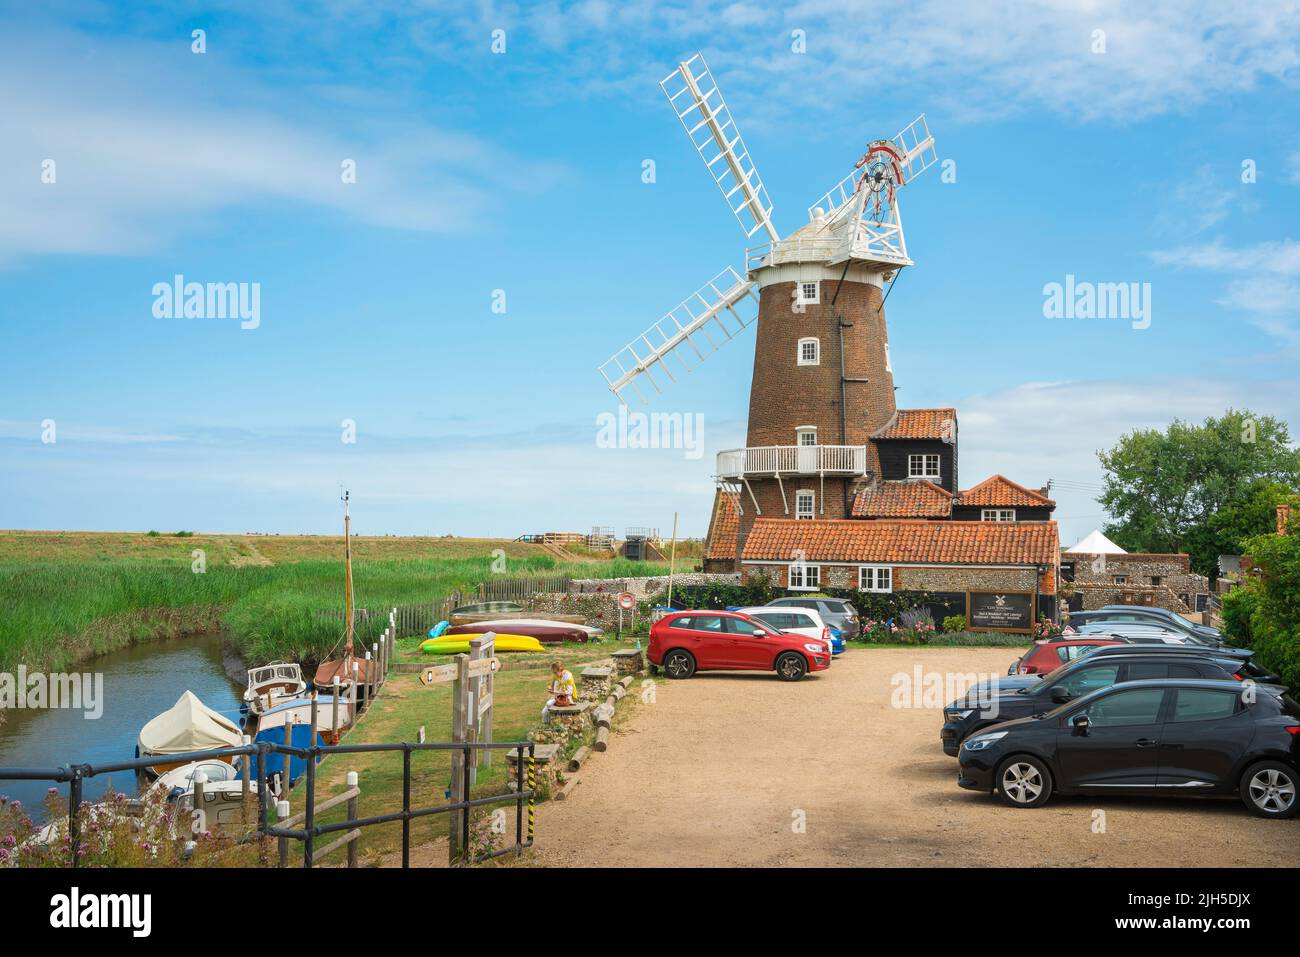 Cley Windmill, Blick im Sommer auf die malerische Windmühle aus dem 18.. Jahrhundert in Cley am Meer, jetzt ein beliebtes Feriengasthaus, nördlich der Norfolk-Küste, Großbritannien Stockfoto